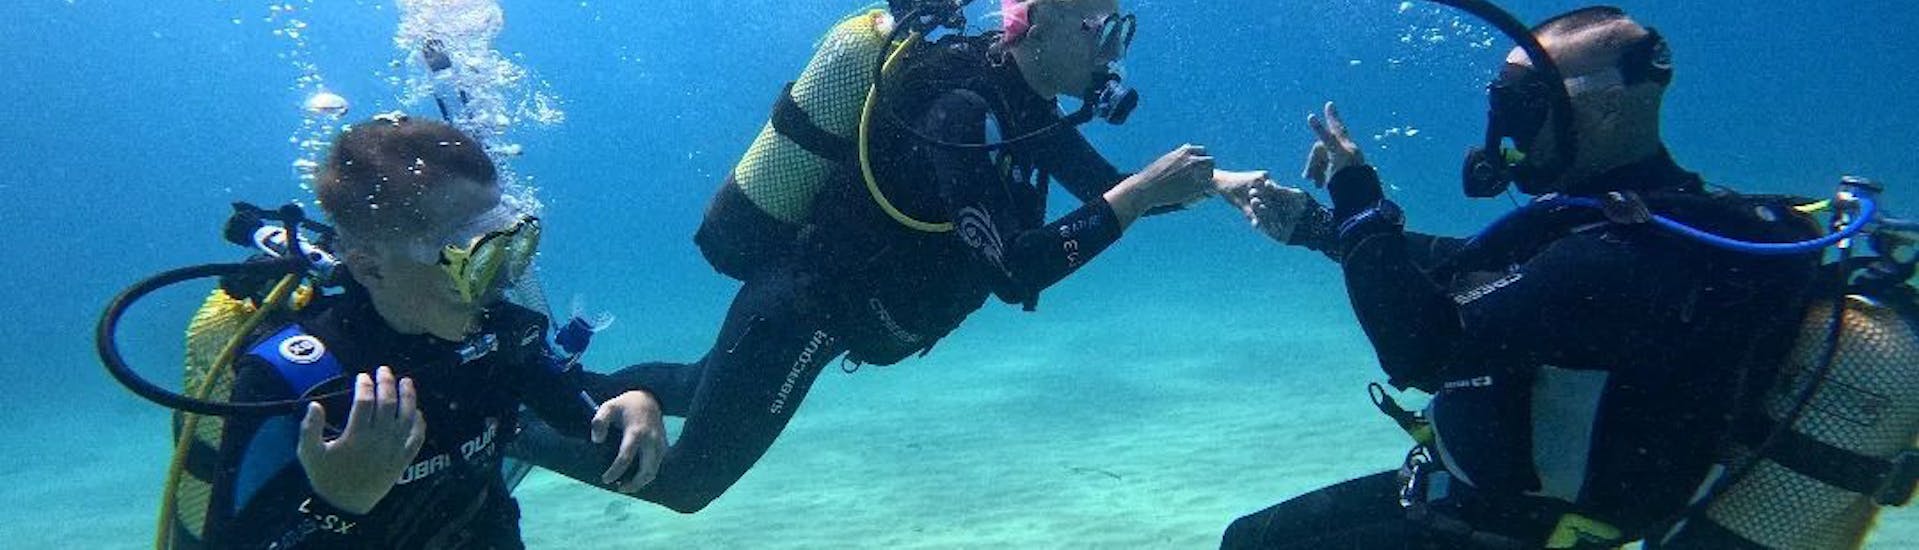 Persona enseñando técnica en un curso SSI Open Water Diver en Lloret de Mar de Dolphins Diving Center Lloret de Mar.